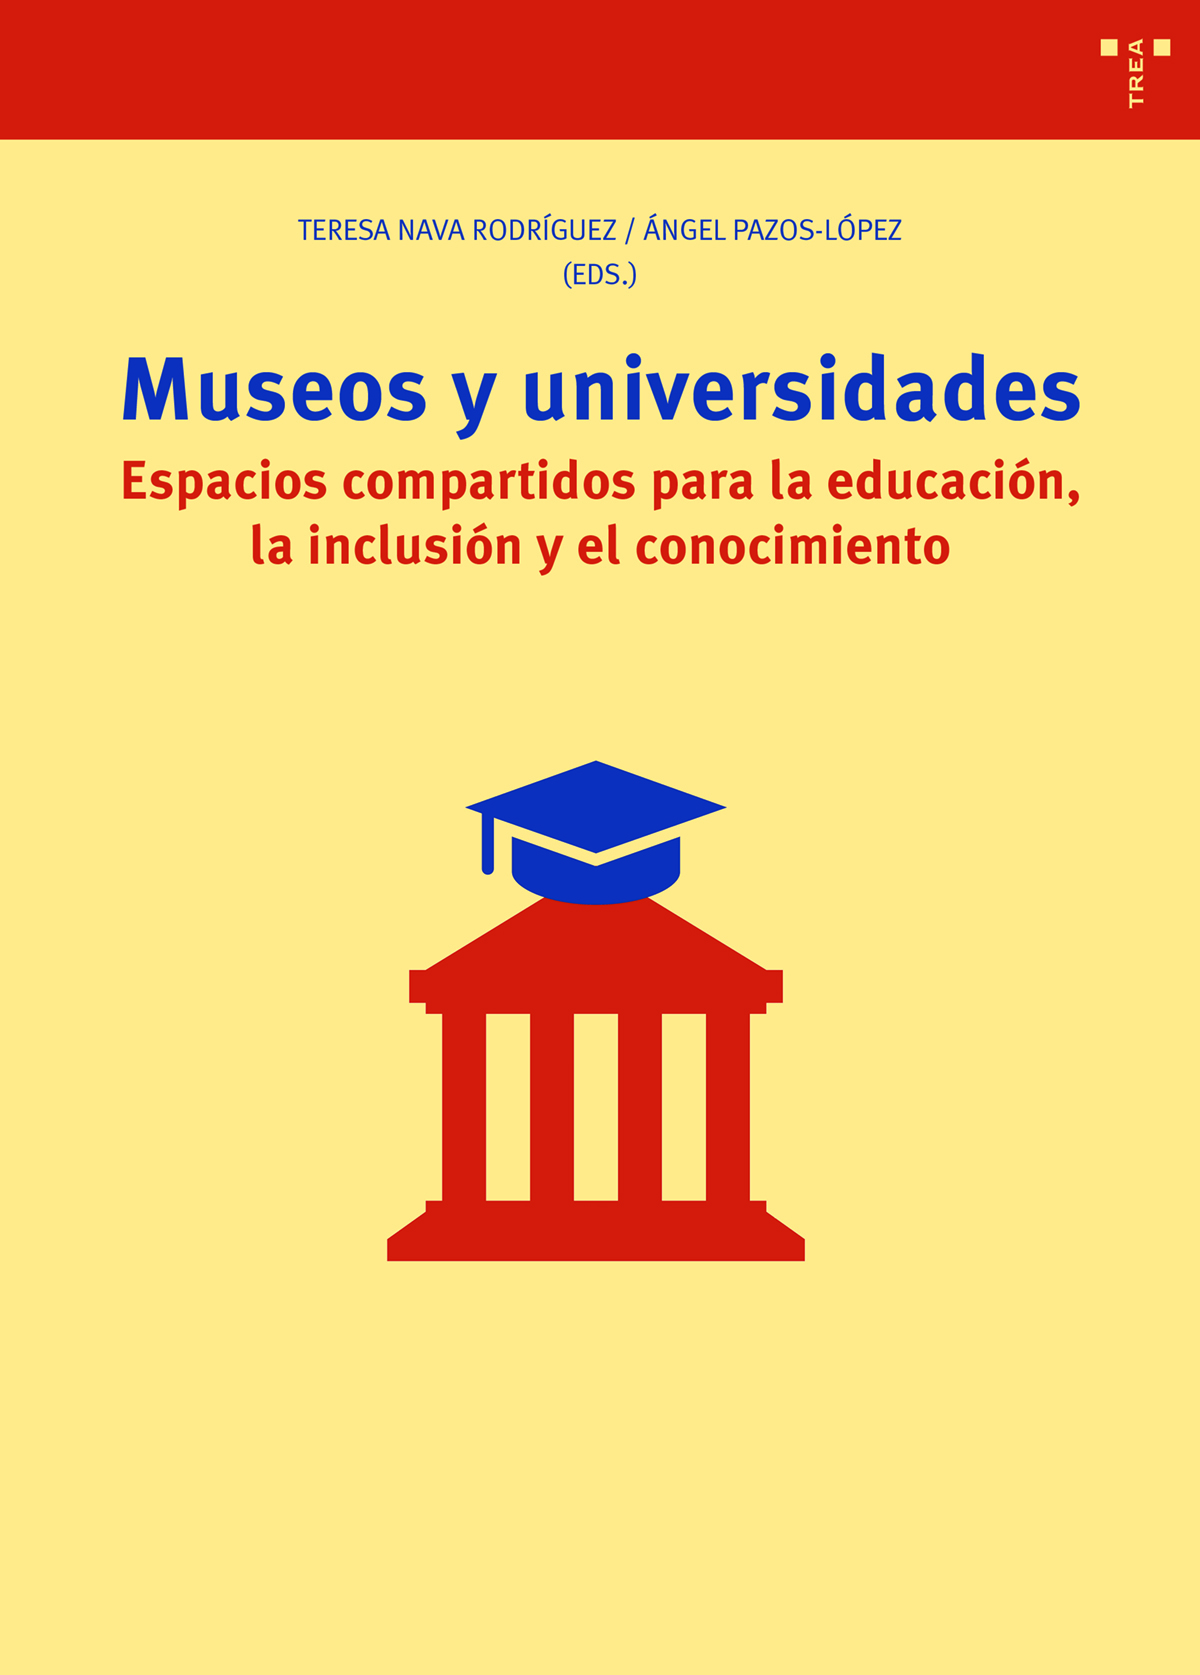 Museos y universidades   «Espacios compartidos para la educación, la inclusión y el conocimiento»